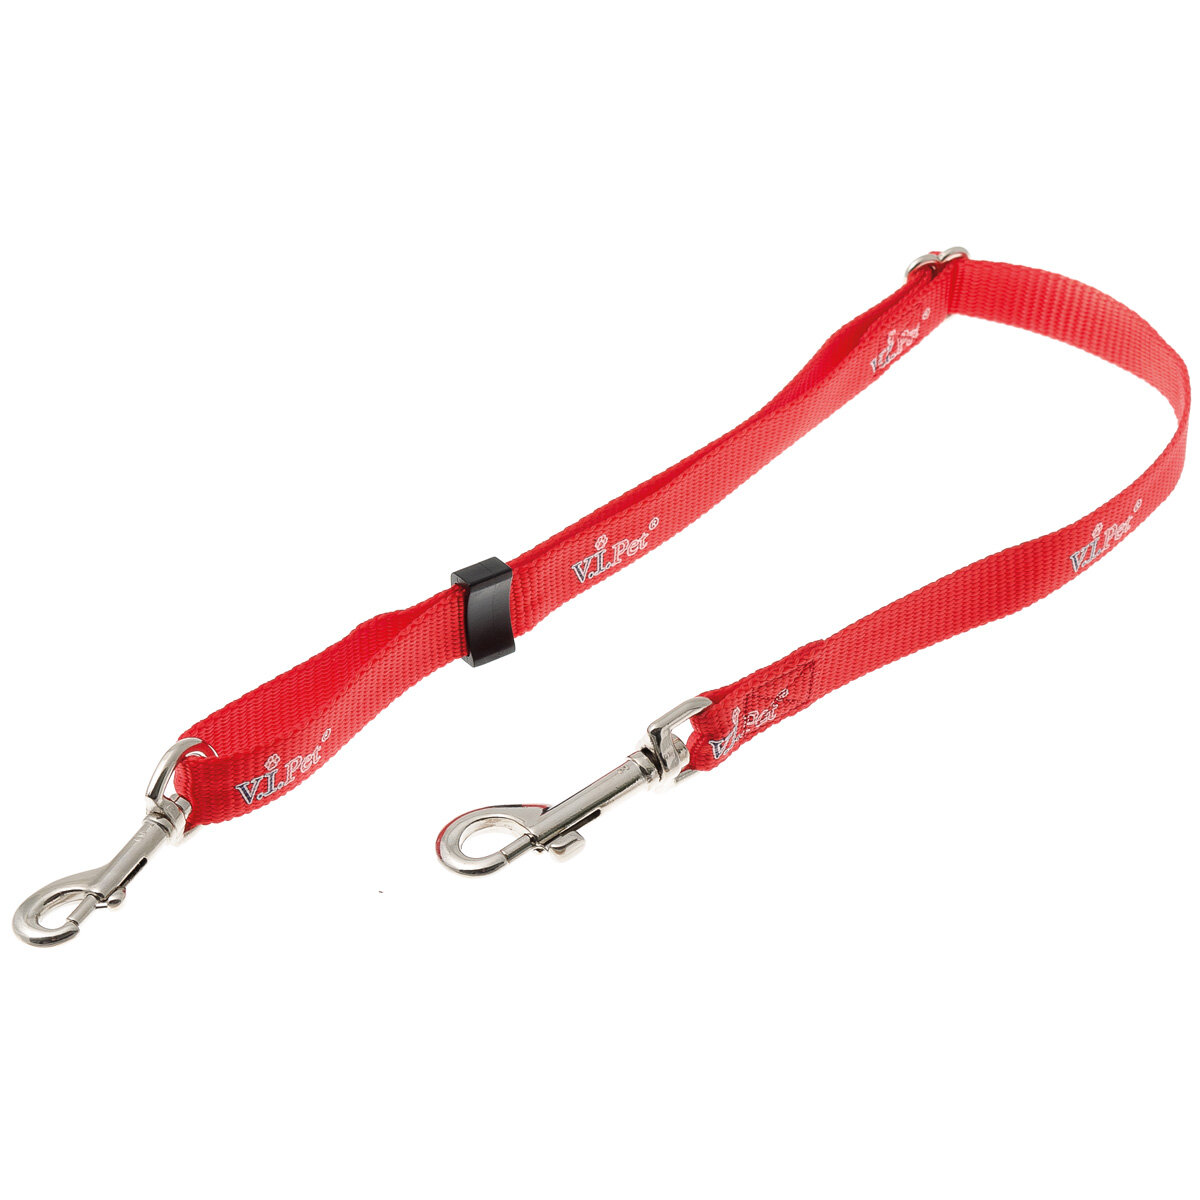 Удлинитель для поводка собаки 15мм (50 см-80 см), красный, V.I.Pet, 73-2888